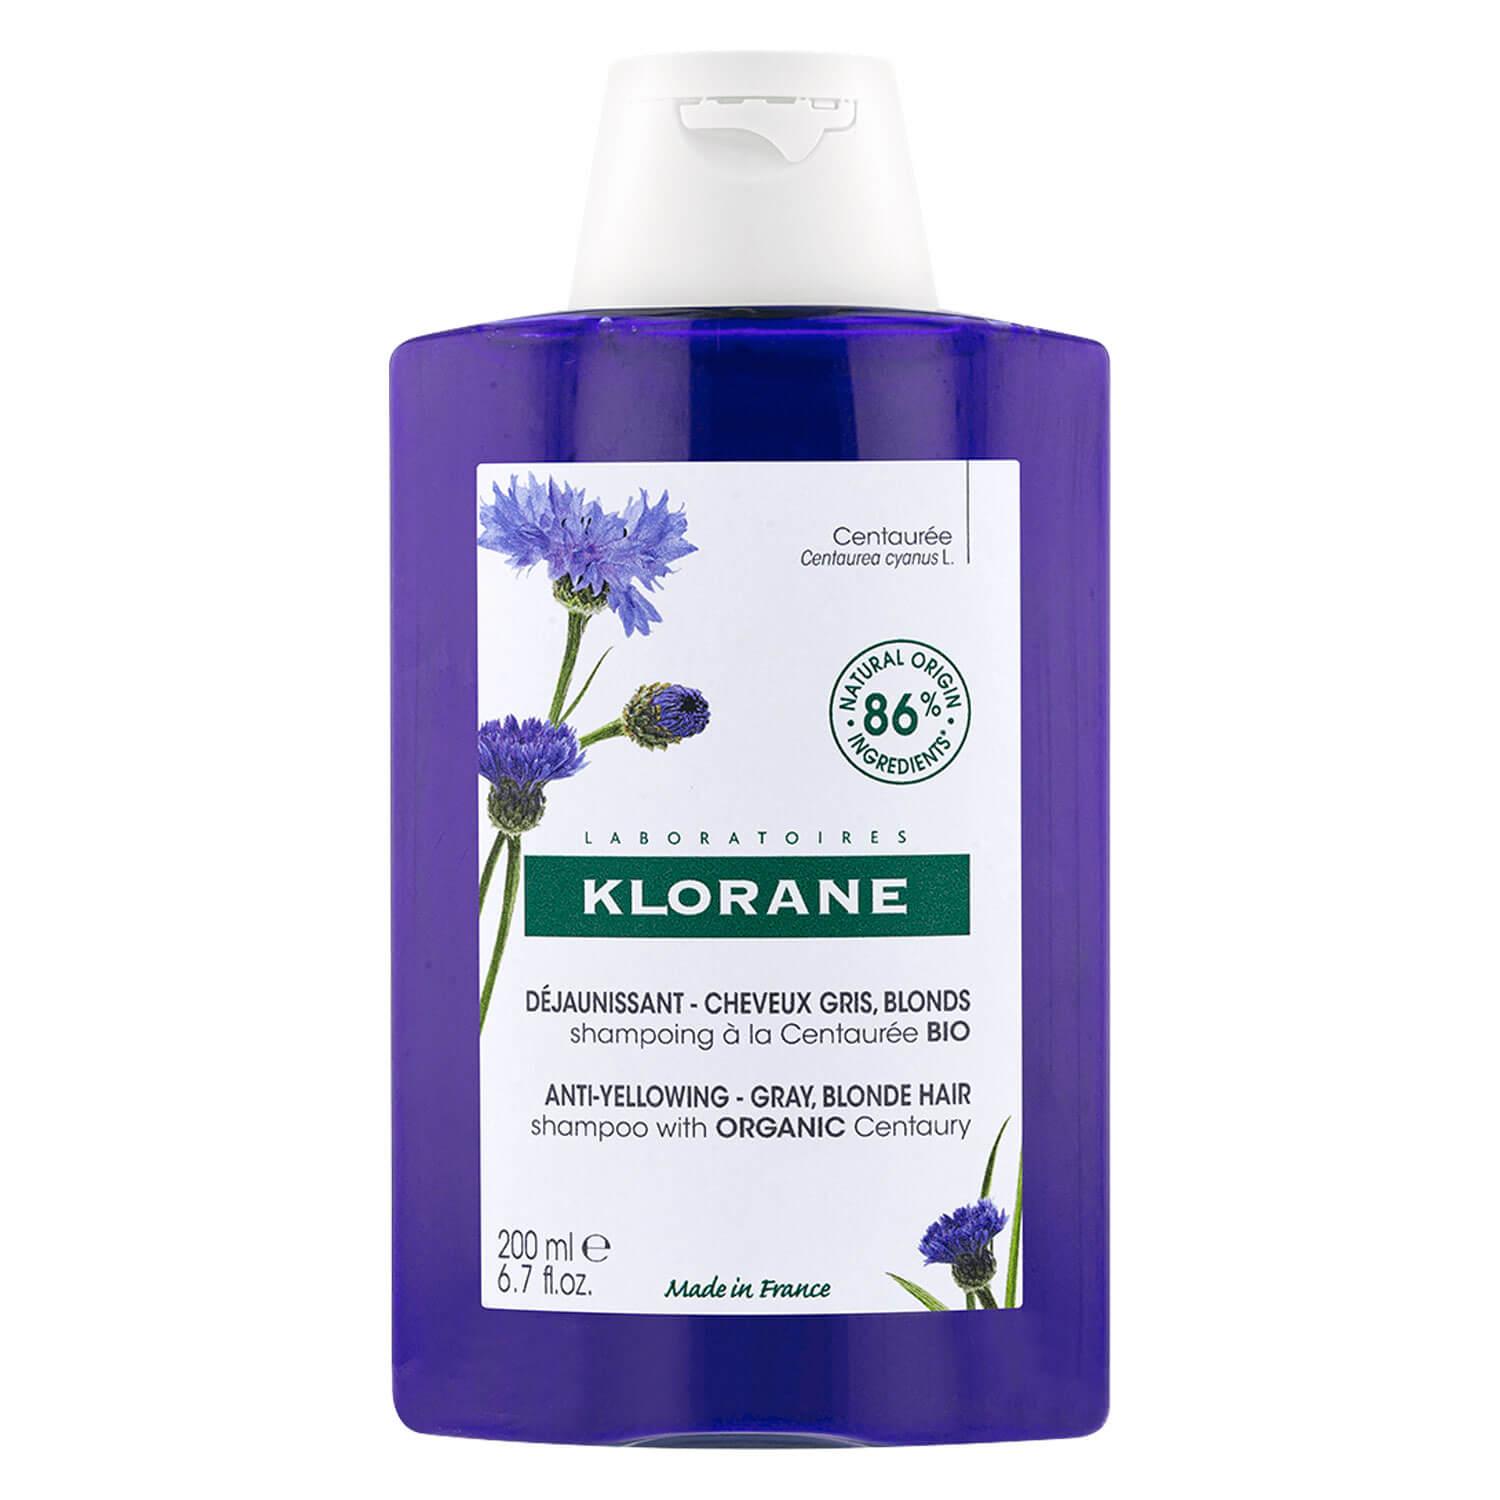 KLORANE Hair - Anti-Yellowing Shampoo Centaury